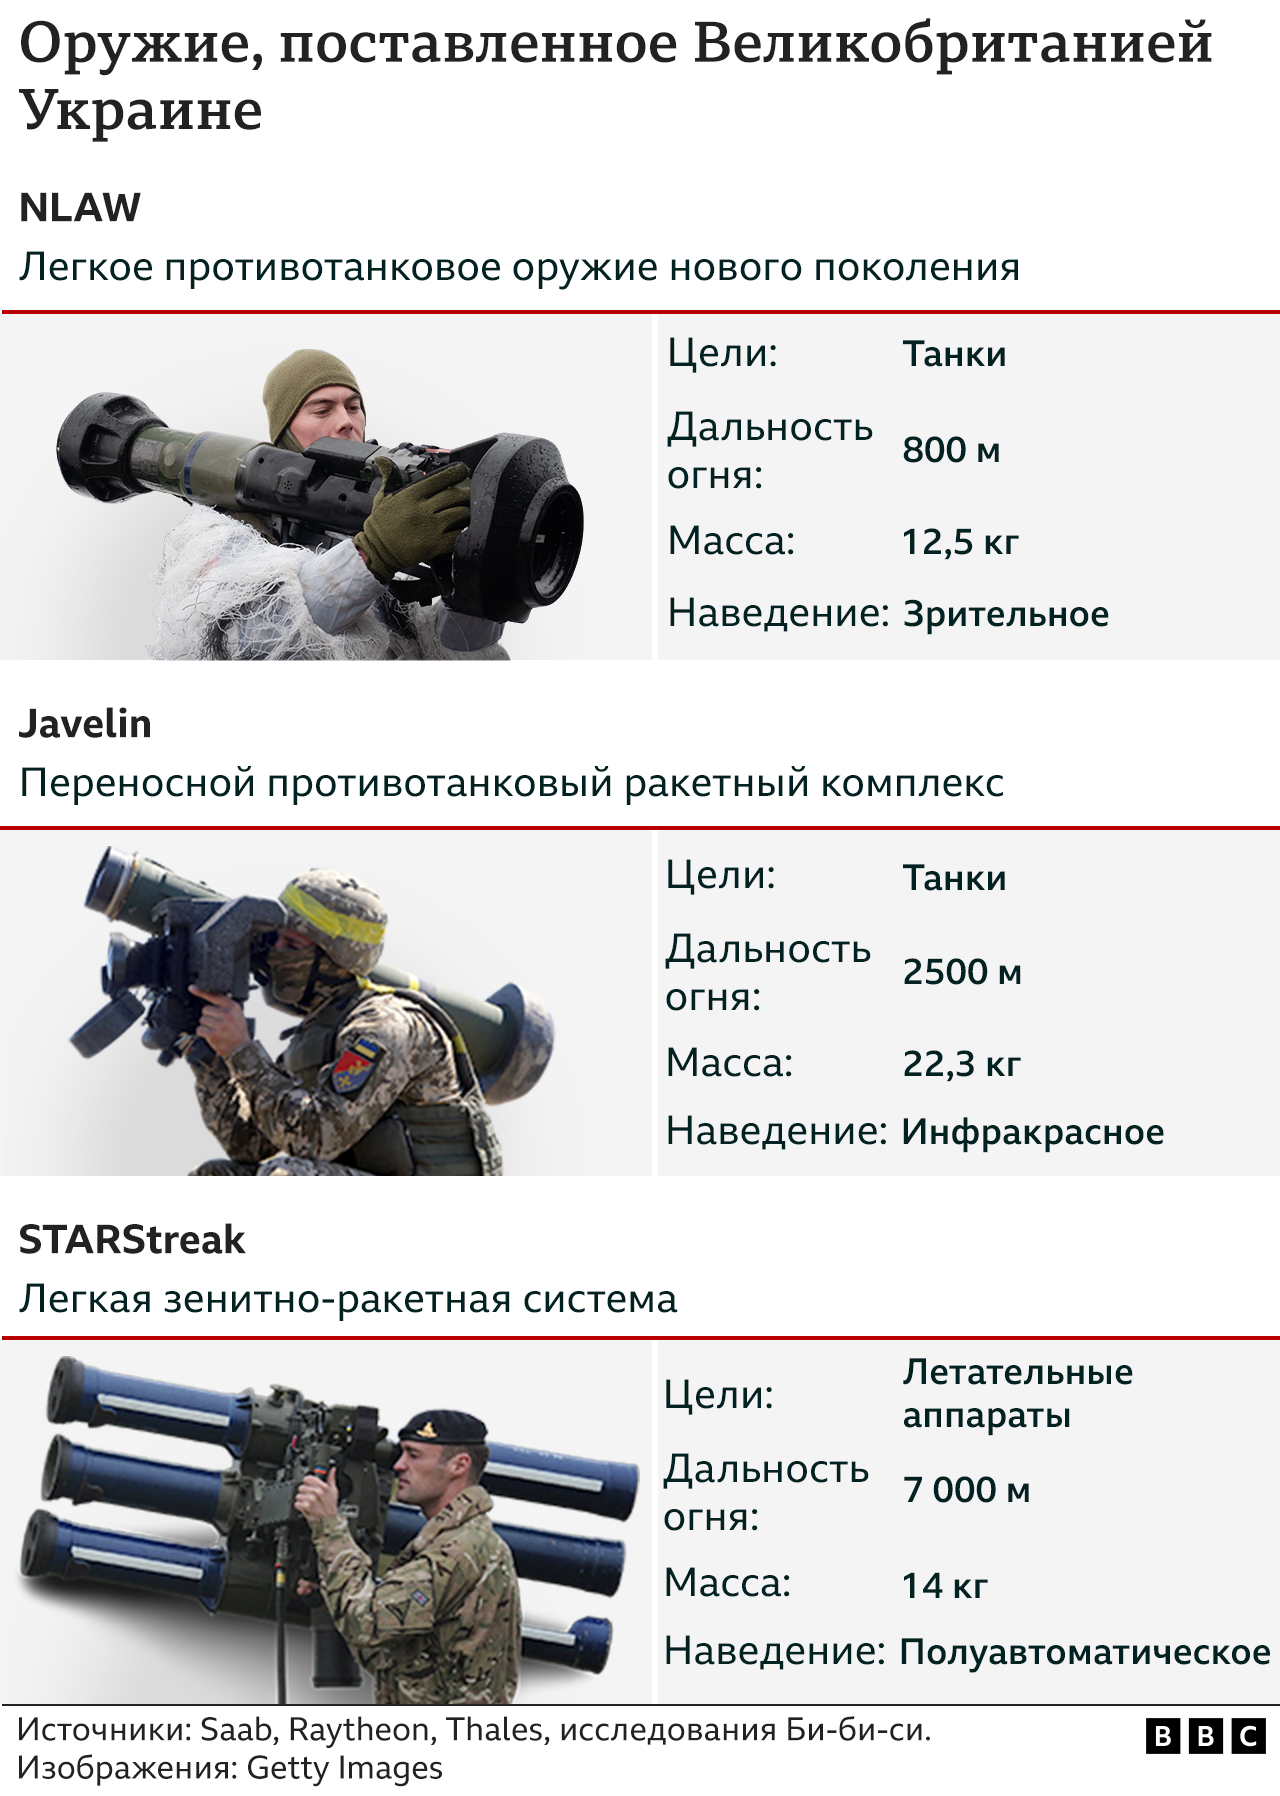 Вооружения, отправленные Великобританией Украине